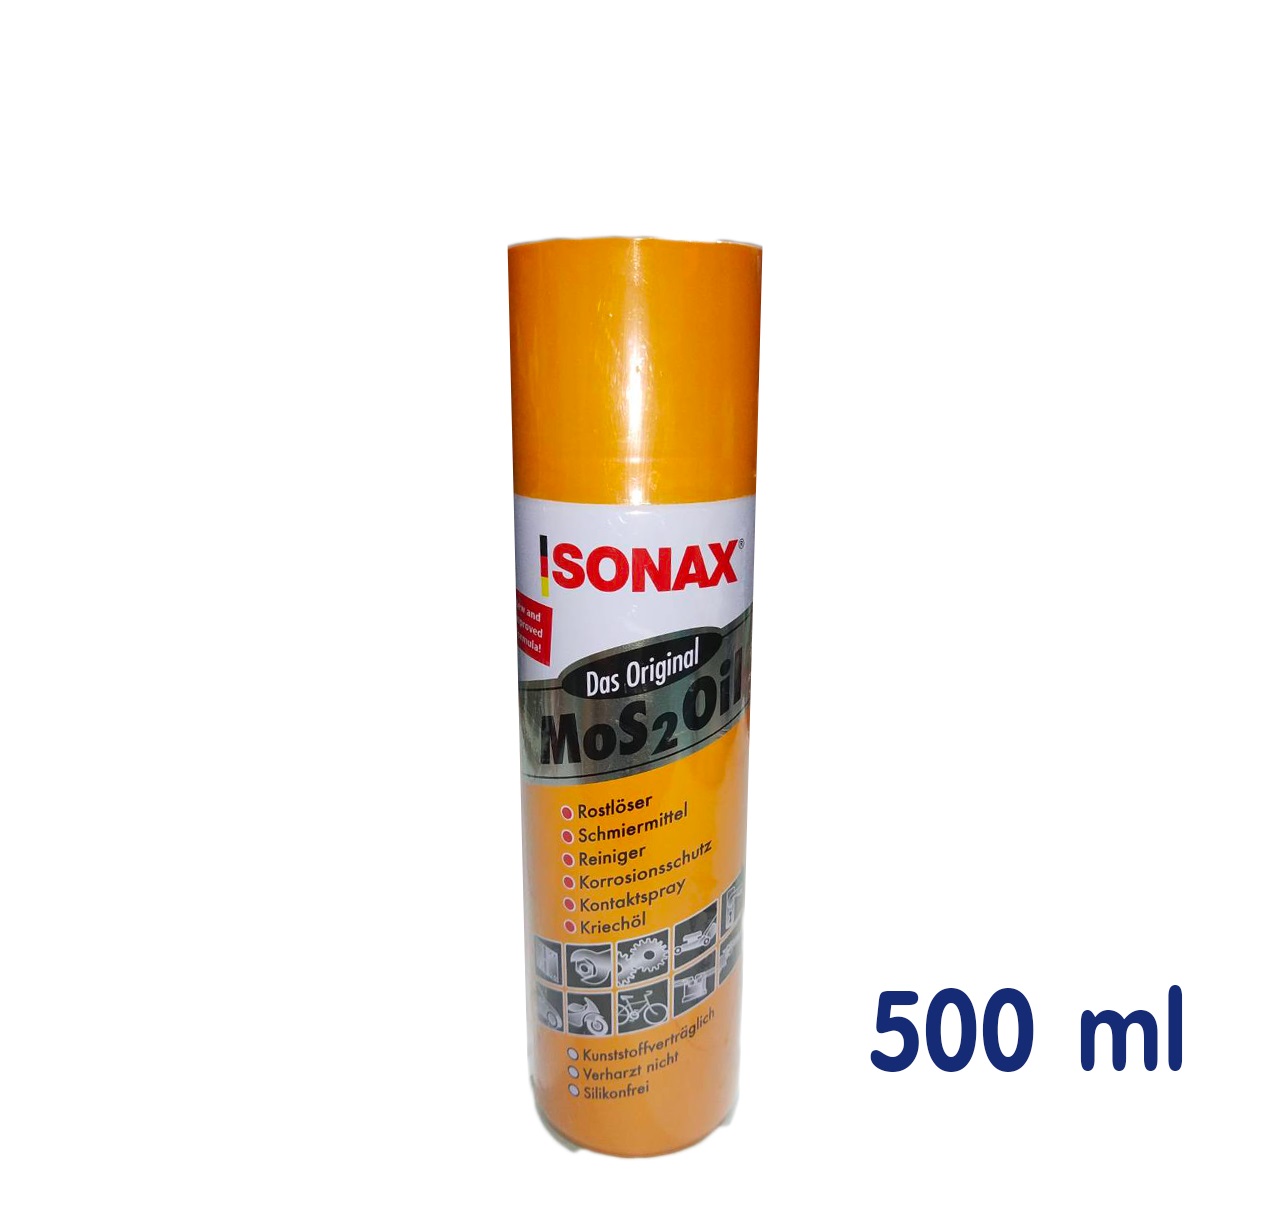 มุมมองเพิ่มเติมของสินค้า น้ำมันหล่อลื่น โซแน็กซ์ Sonax spray 200 มล 400 มล 500 มล โซแน็ก น้ำมันอเนกประสงค์ น้ำมันโซเน็ก สเปรย์อเนกประสงค์ ครอบจักรวาล สเปรย์ Sonex / M.K Tool